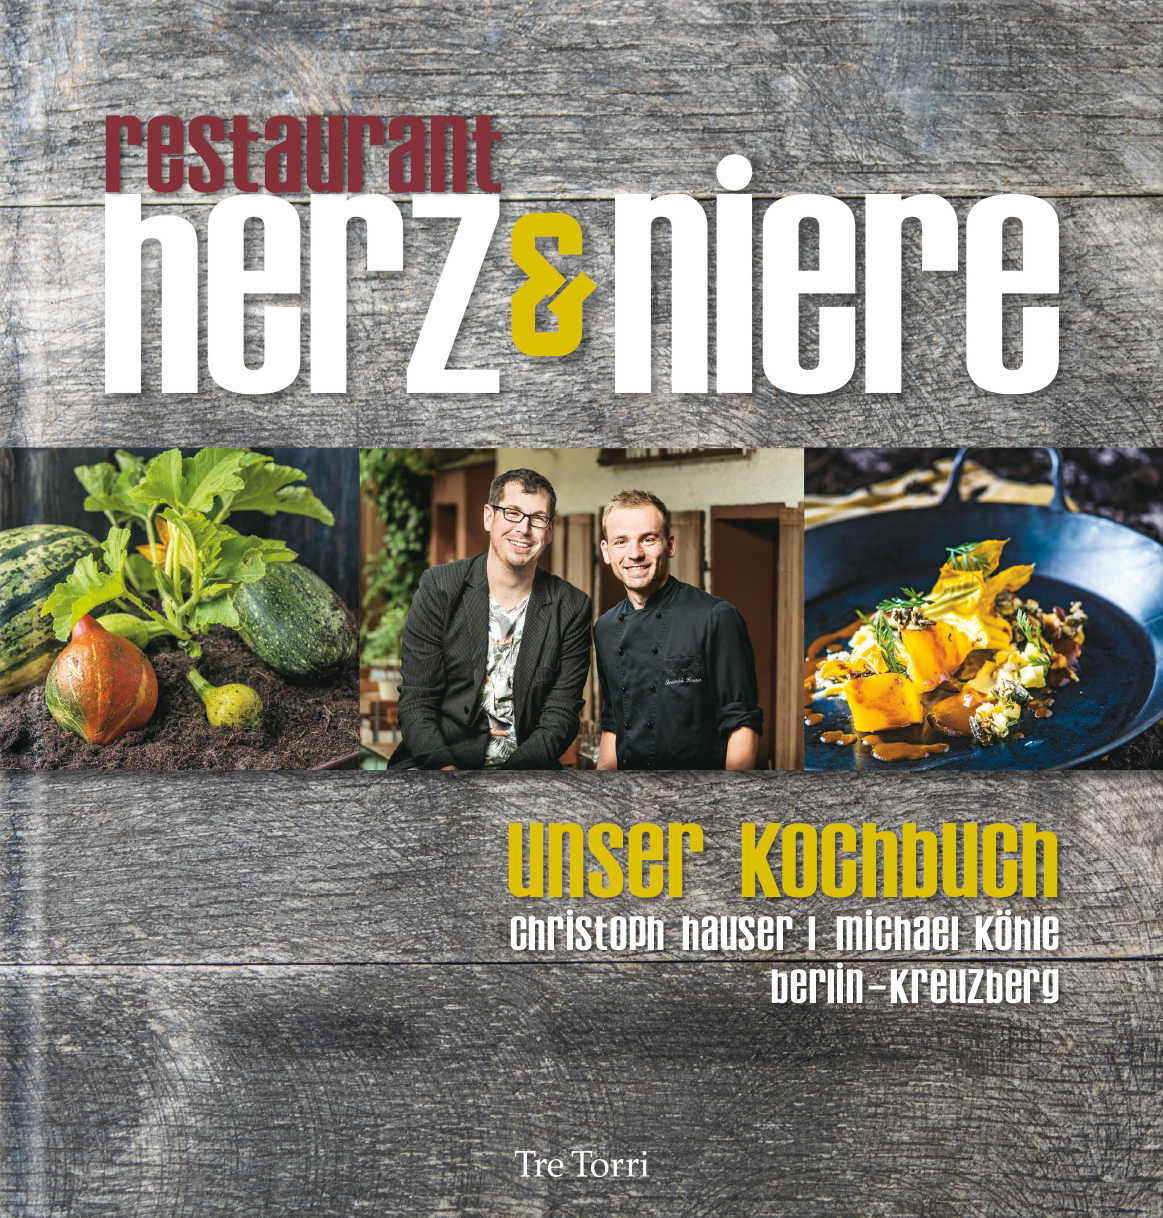 Restaurant herz&niere - Unser Kochbuch